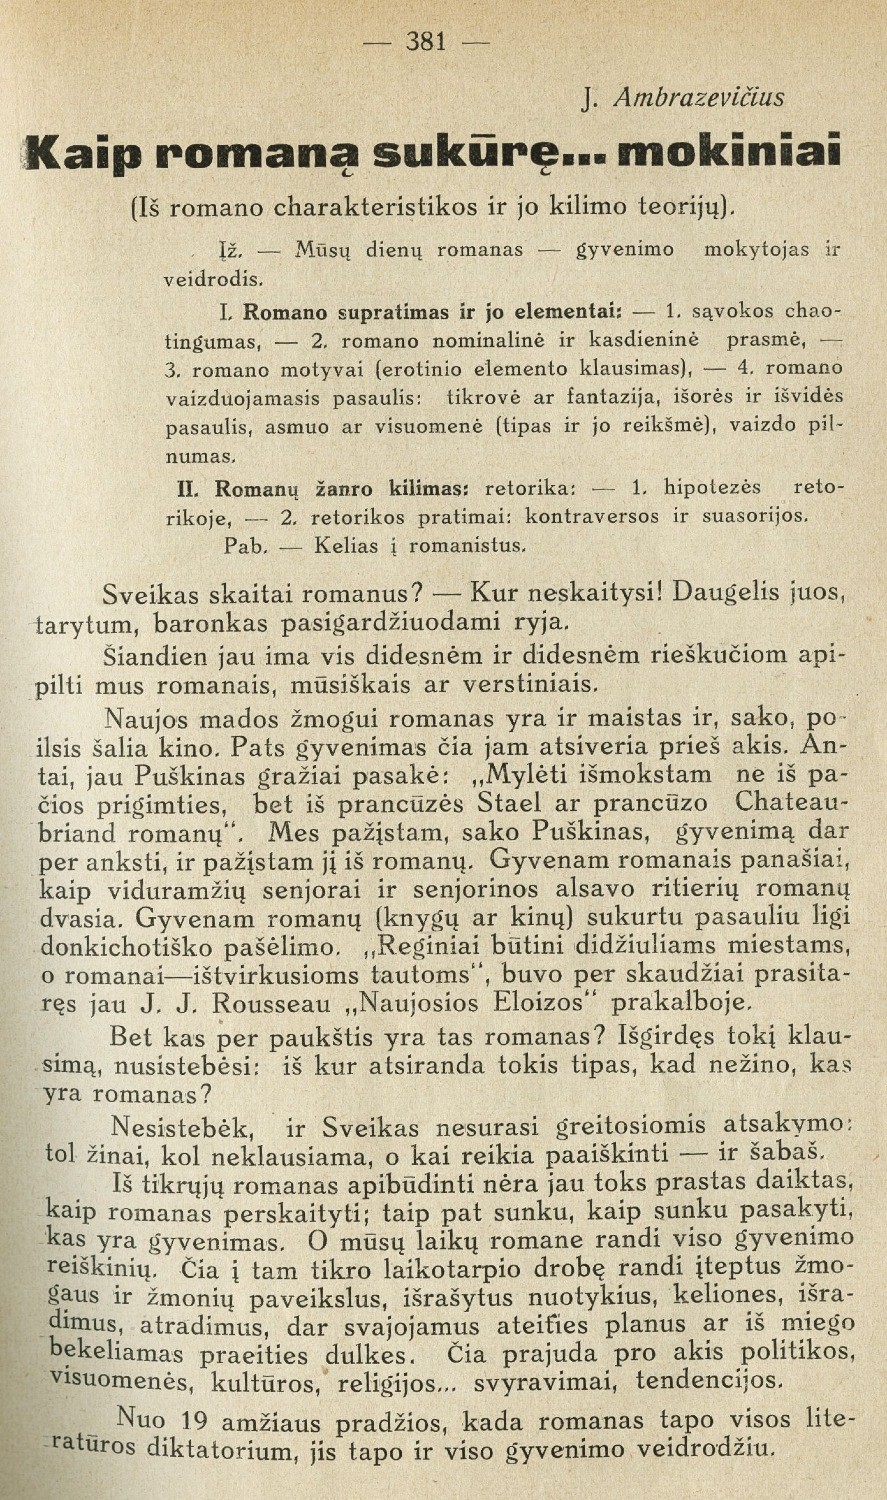 Kaip romaną sukūrę ... mokiniai (Iš romano charakteristikos ir jo likimo teorijų) / J. Ambrazevičius // Ateitis. – 1929, Nr. 10, p. 381–388.